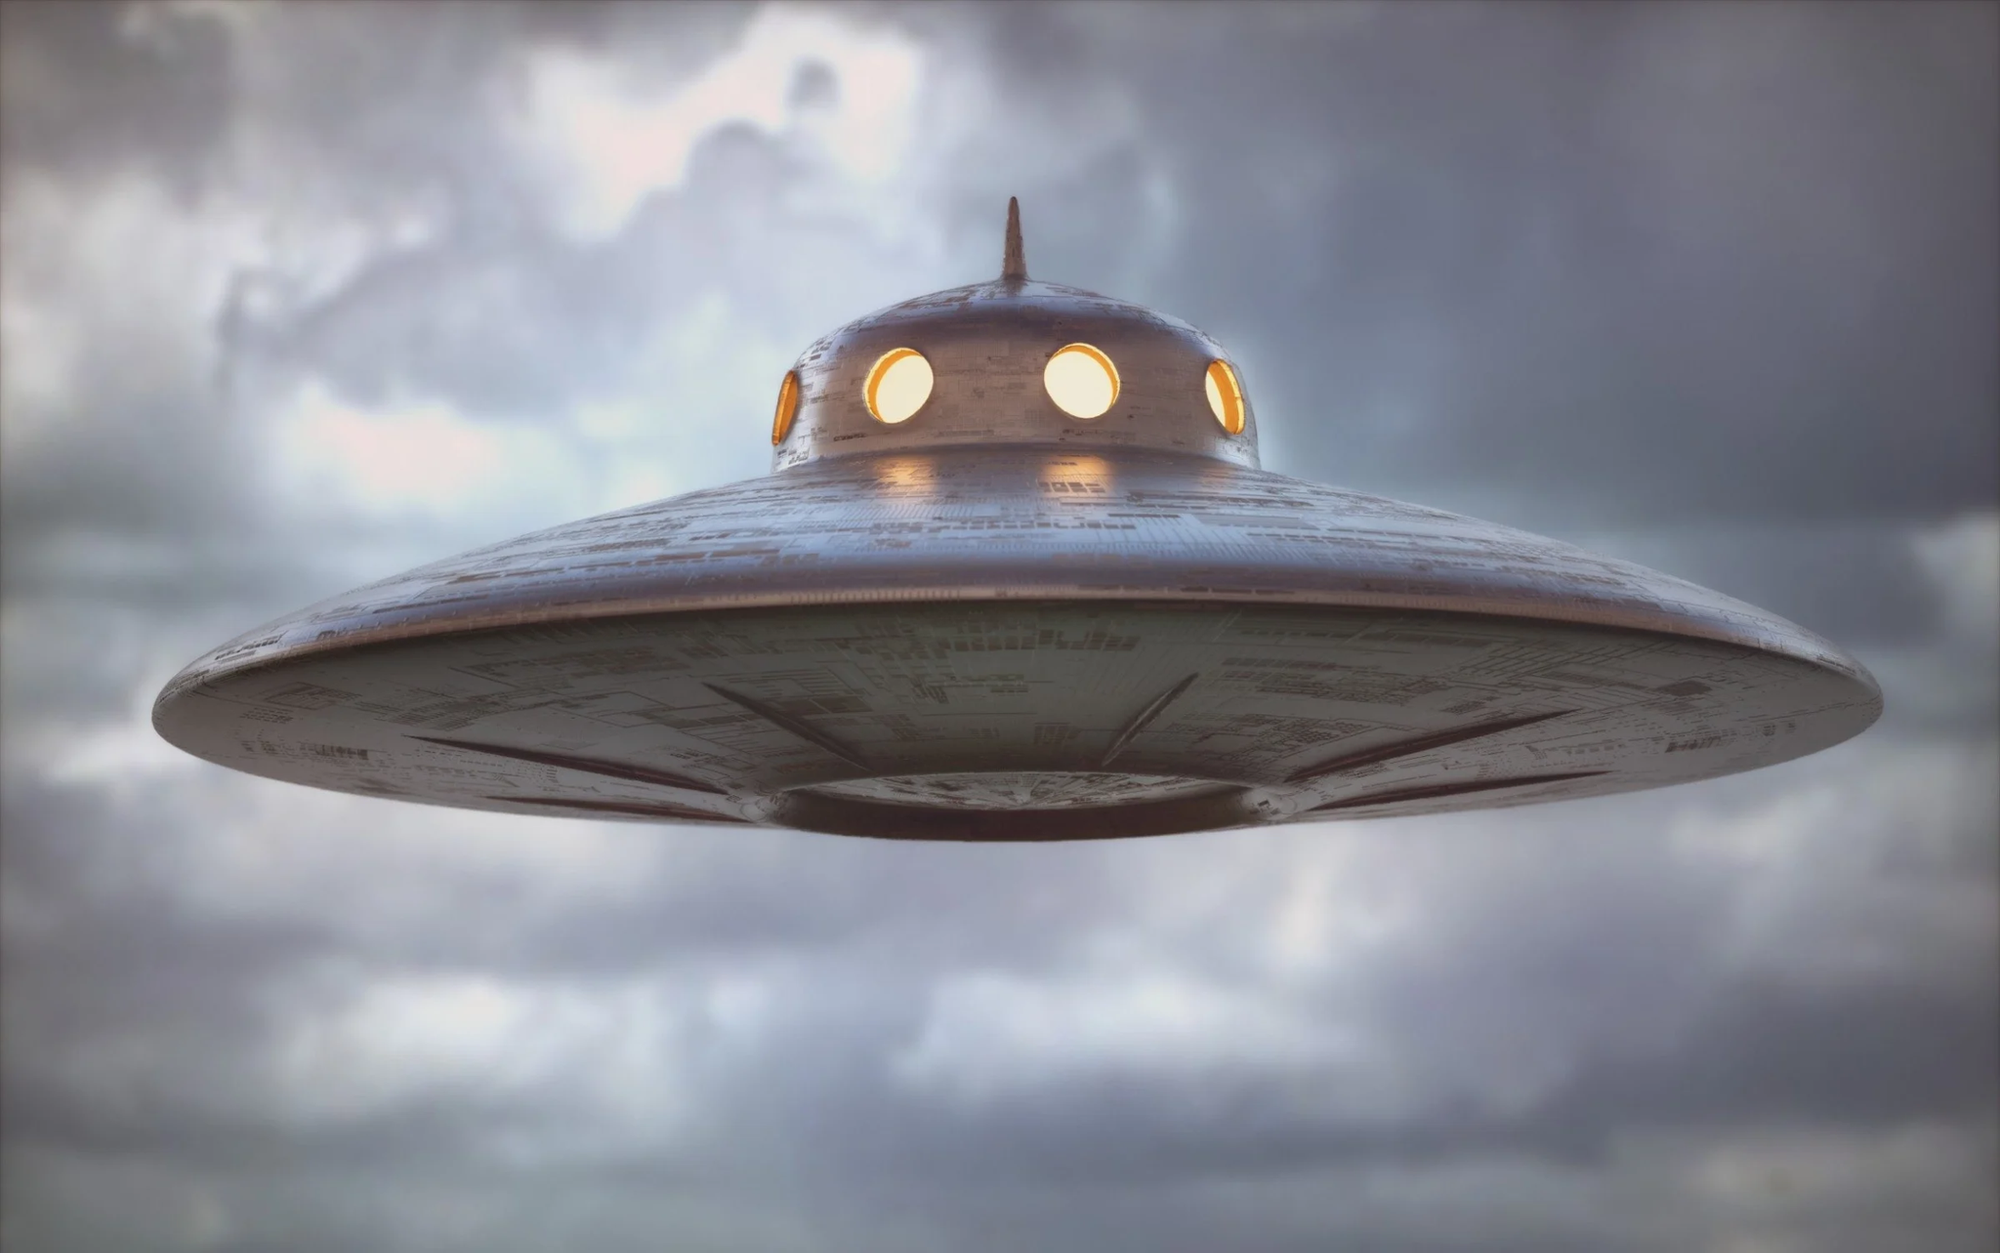 Mỹ chạm trán UFO như “cơm bữa”, nghi vấn có thể là khinh khí cầu do thám của nước khác - Ảnh 1.